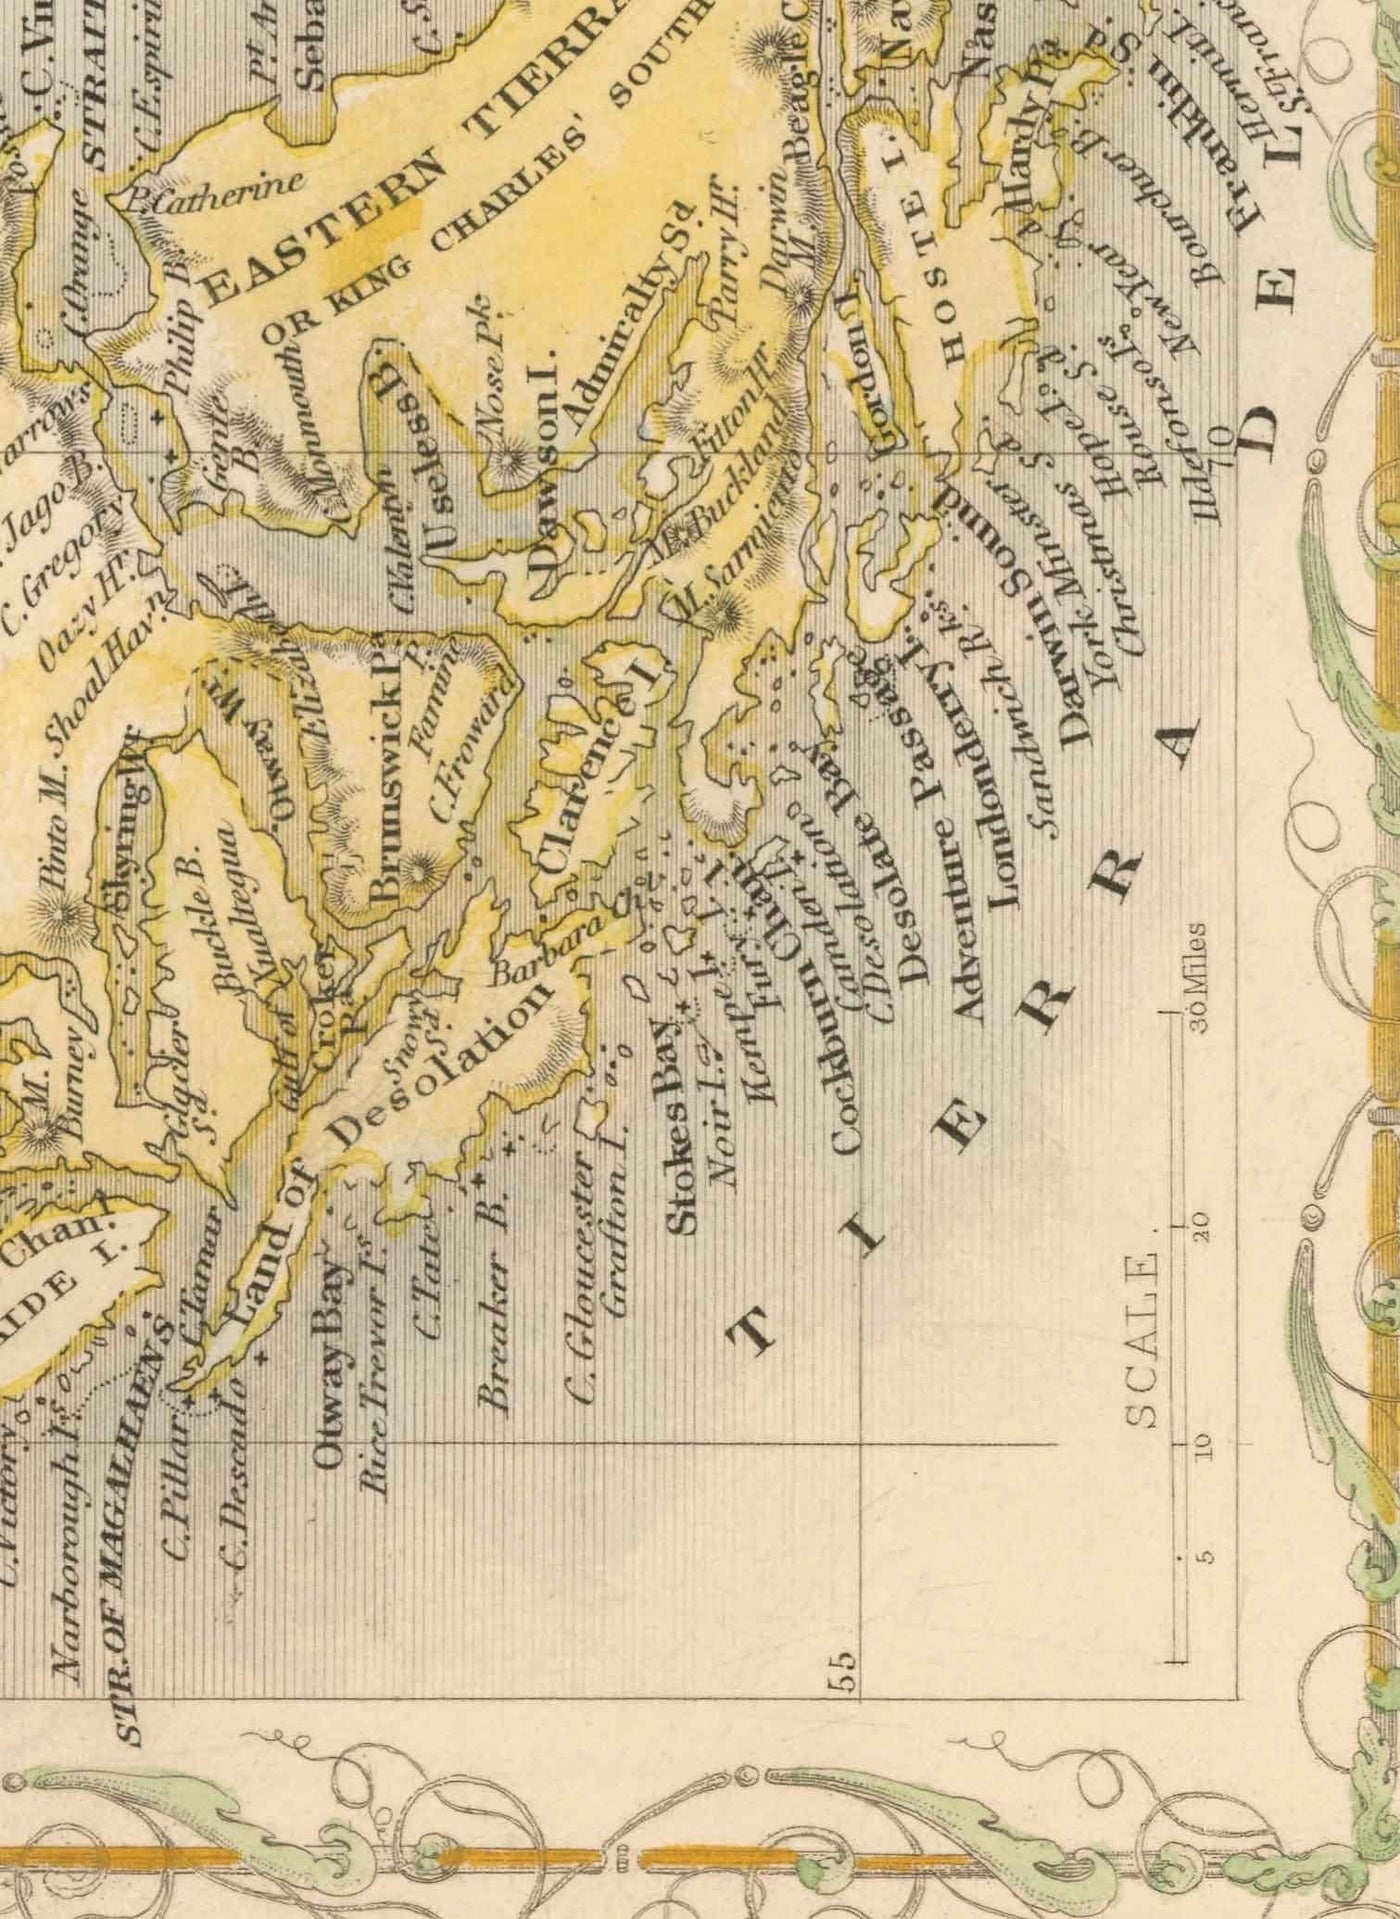 Alte Karte Falklandinseln & Patagonien, 1851 - Südamerika, Kap Hoorn, Malwinen, Feuerland, Britisches Empire